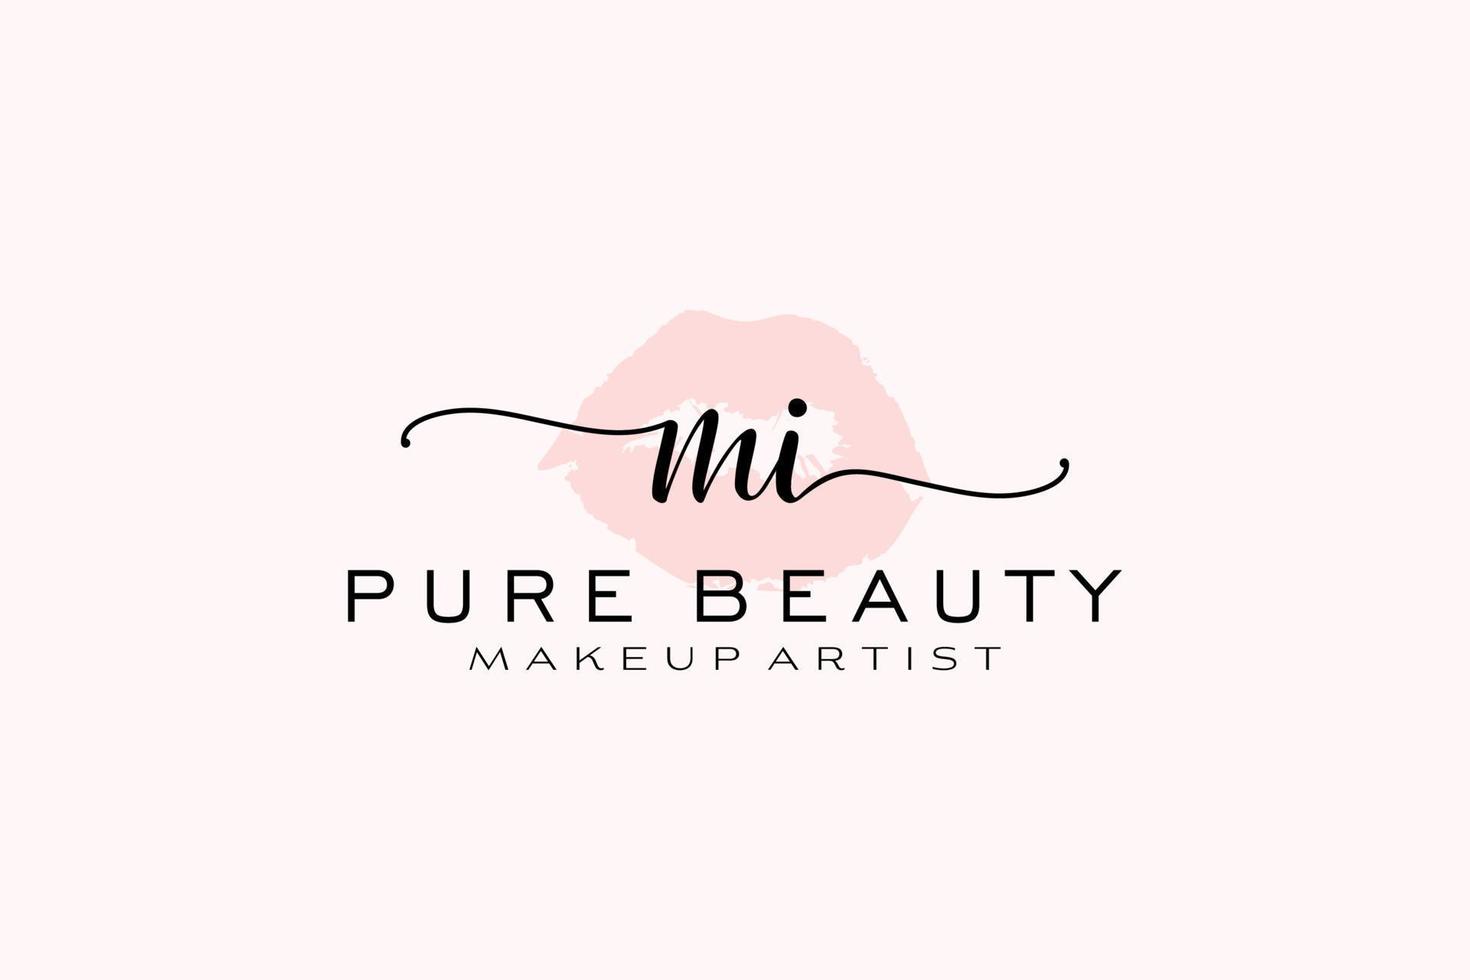 création initiale de logo préfabriqué pour les lèvres aquarelle mi, logo pour la marque d'entreprise de maquilleur, création de logo de boutique de beauté blush, logo de calligraphie avec modèle créatif. vecteur